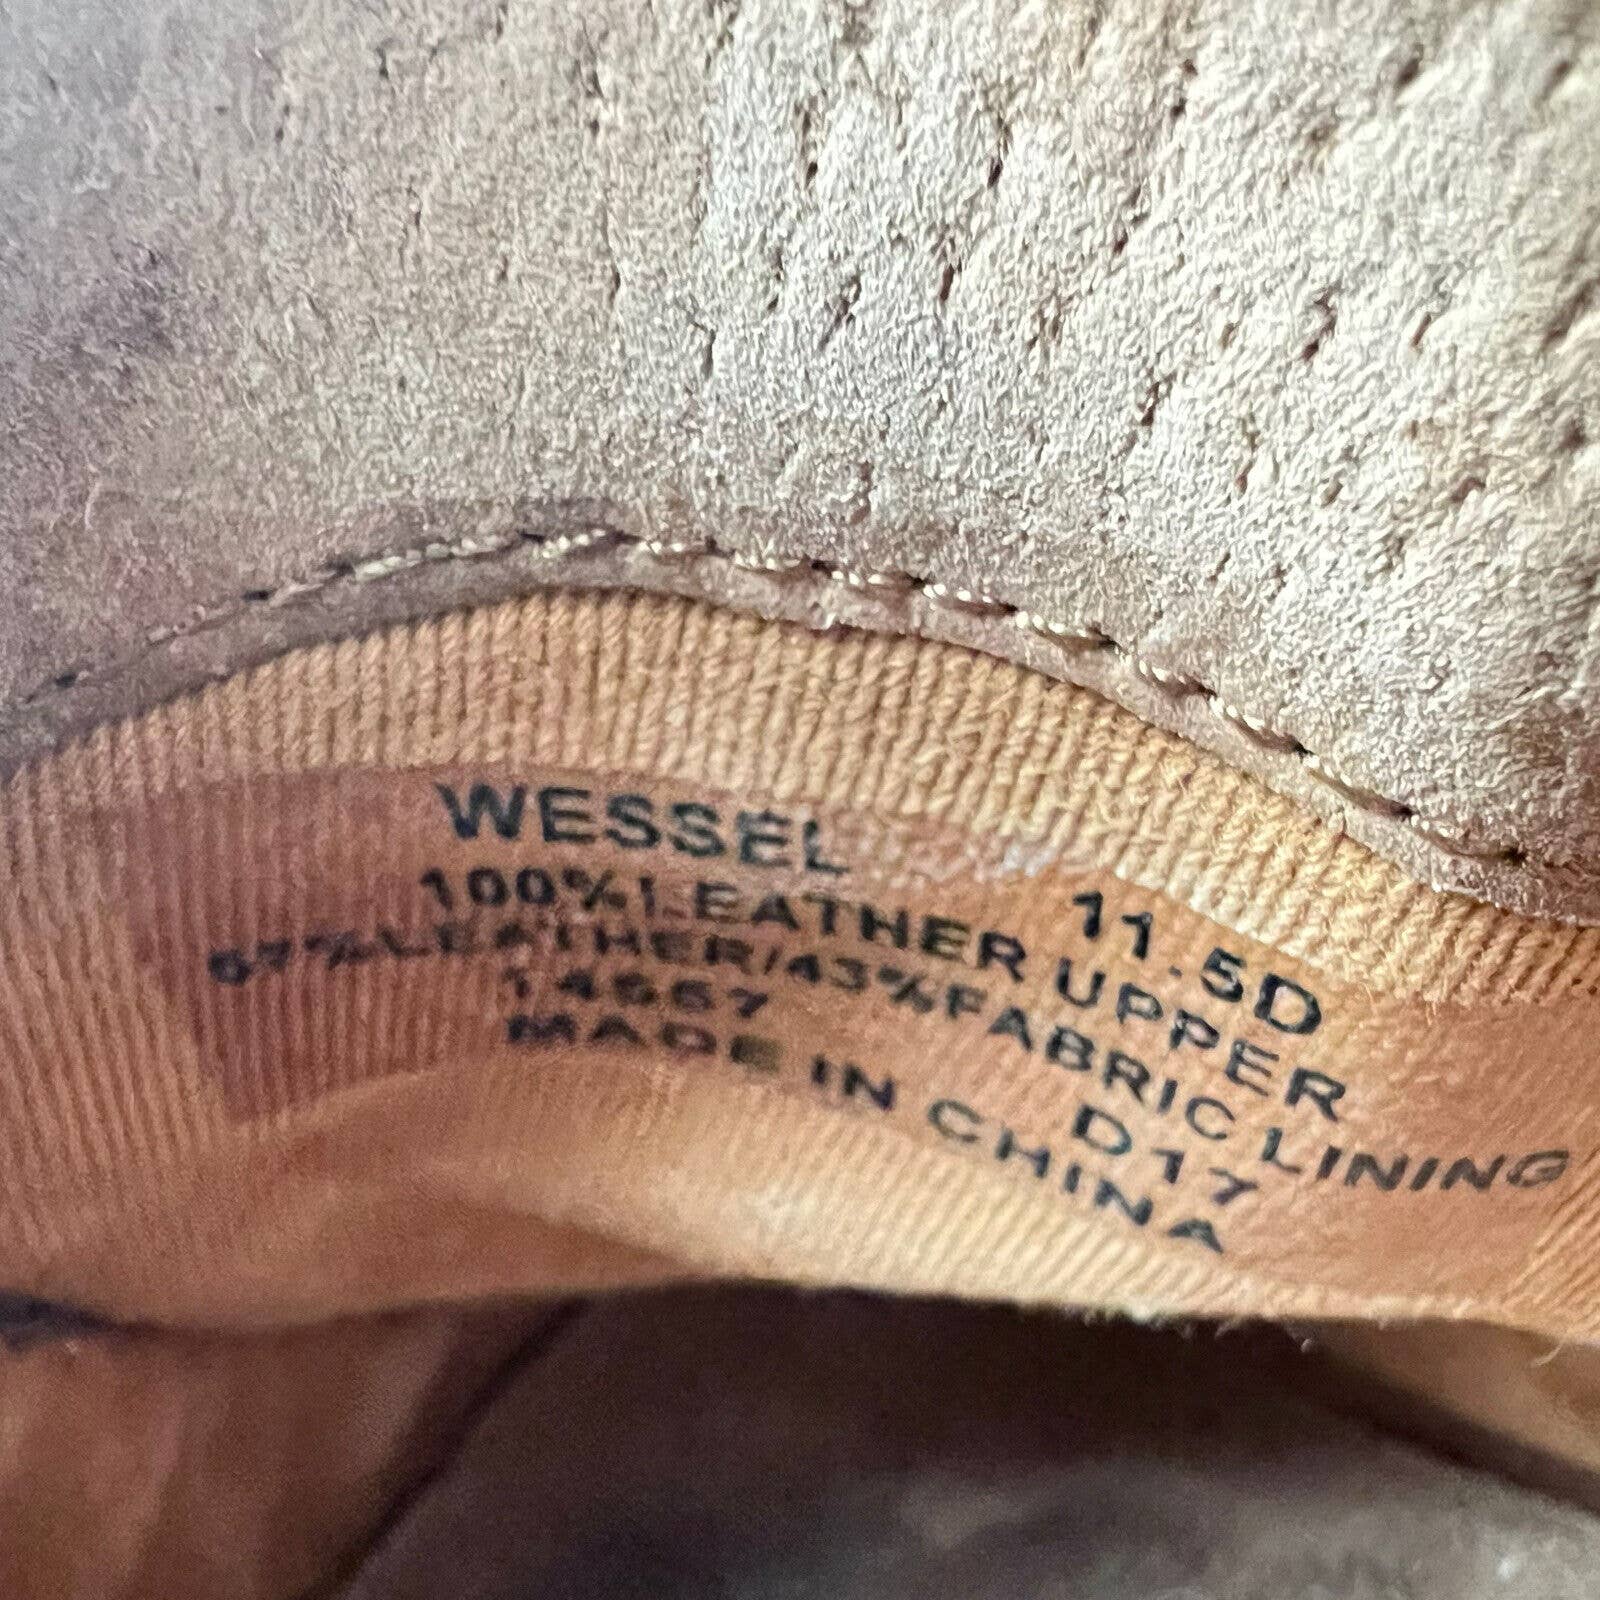 RALPH LAUREN Wessel Burnished Calfskin Driver Men’s 11.5 D Brown Leather Loafer